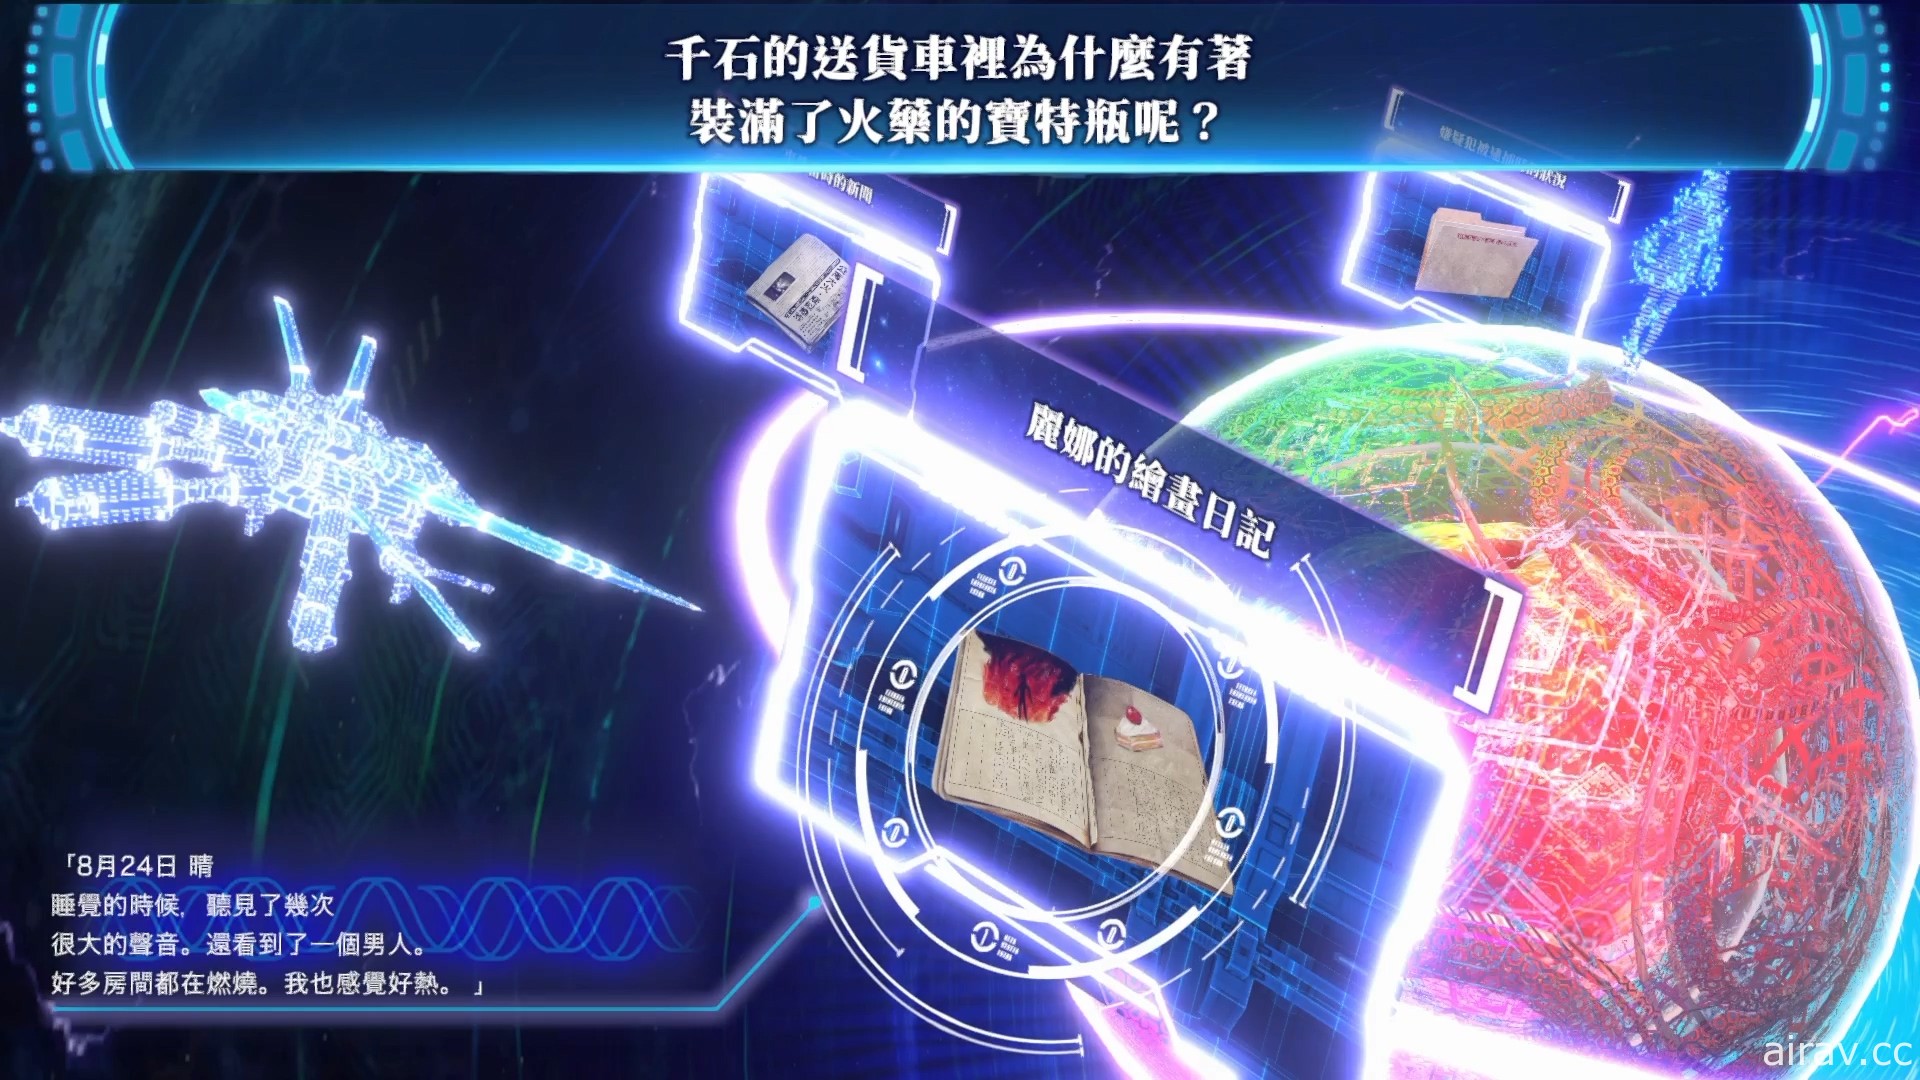 《冤罪执行游戏 Yurukill》繁体中文版今日正式推出 将同步举办庆祝上市活动